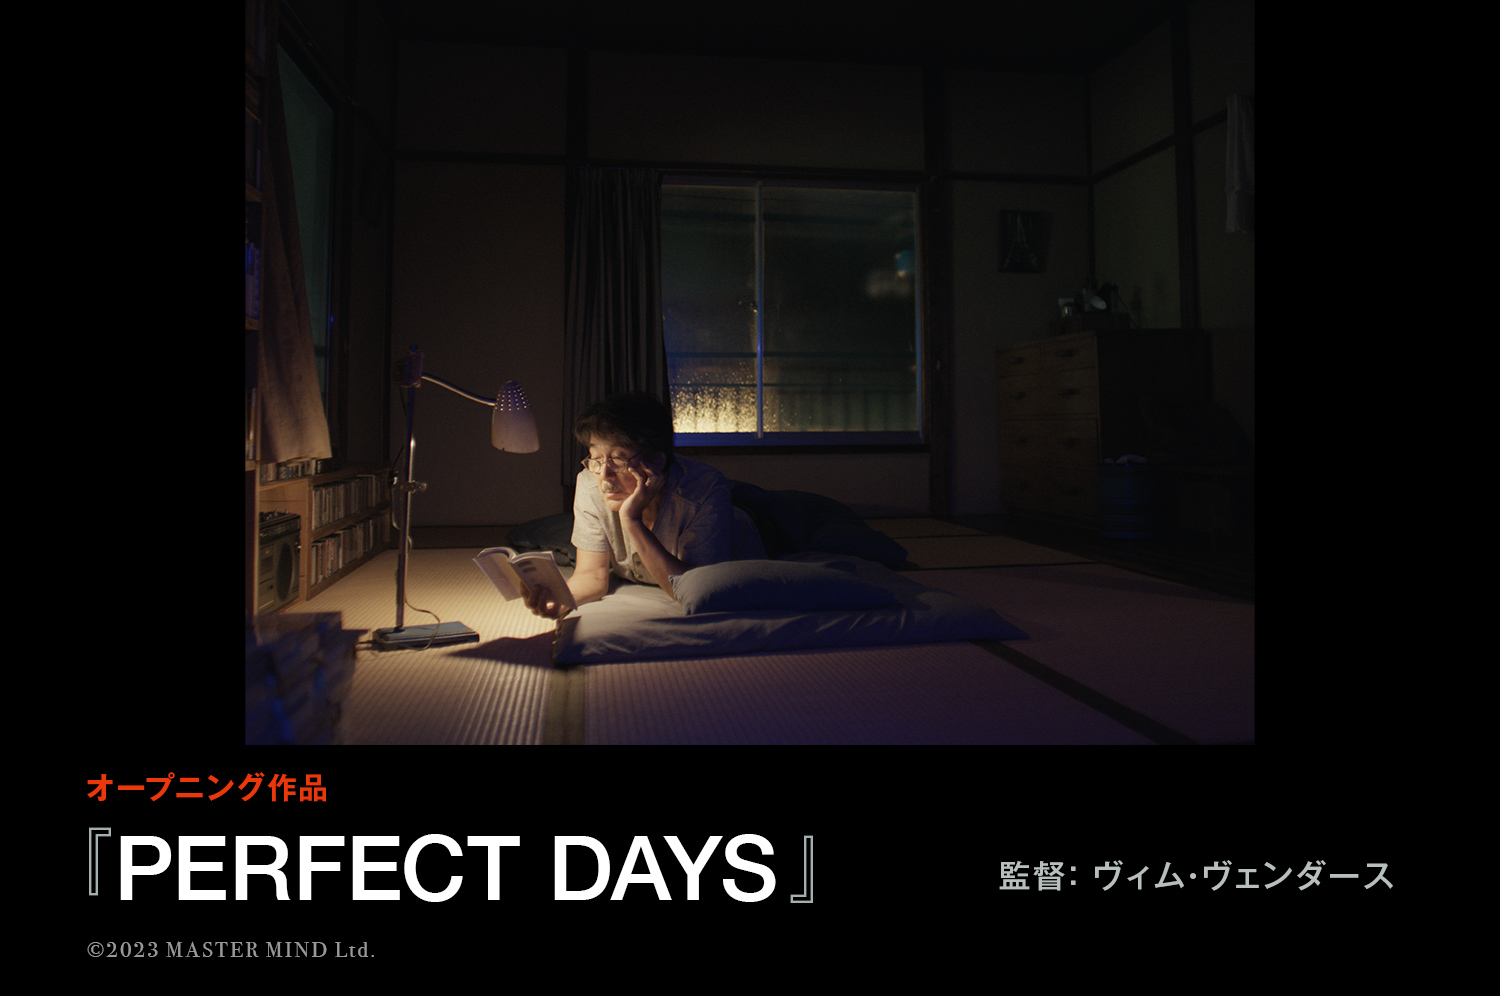 第36回東京国際映画祭 オープニング作品『PERFECT DAYS』に決定！！